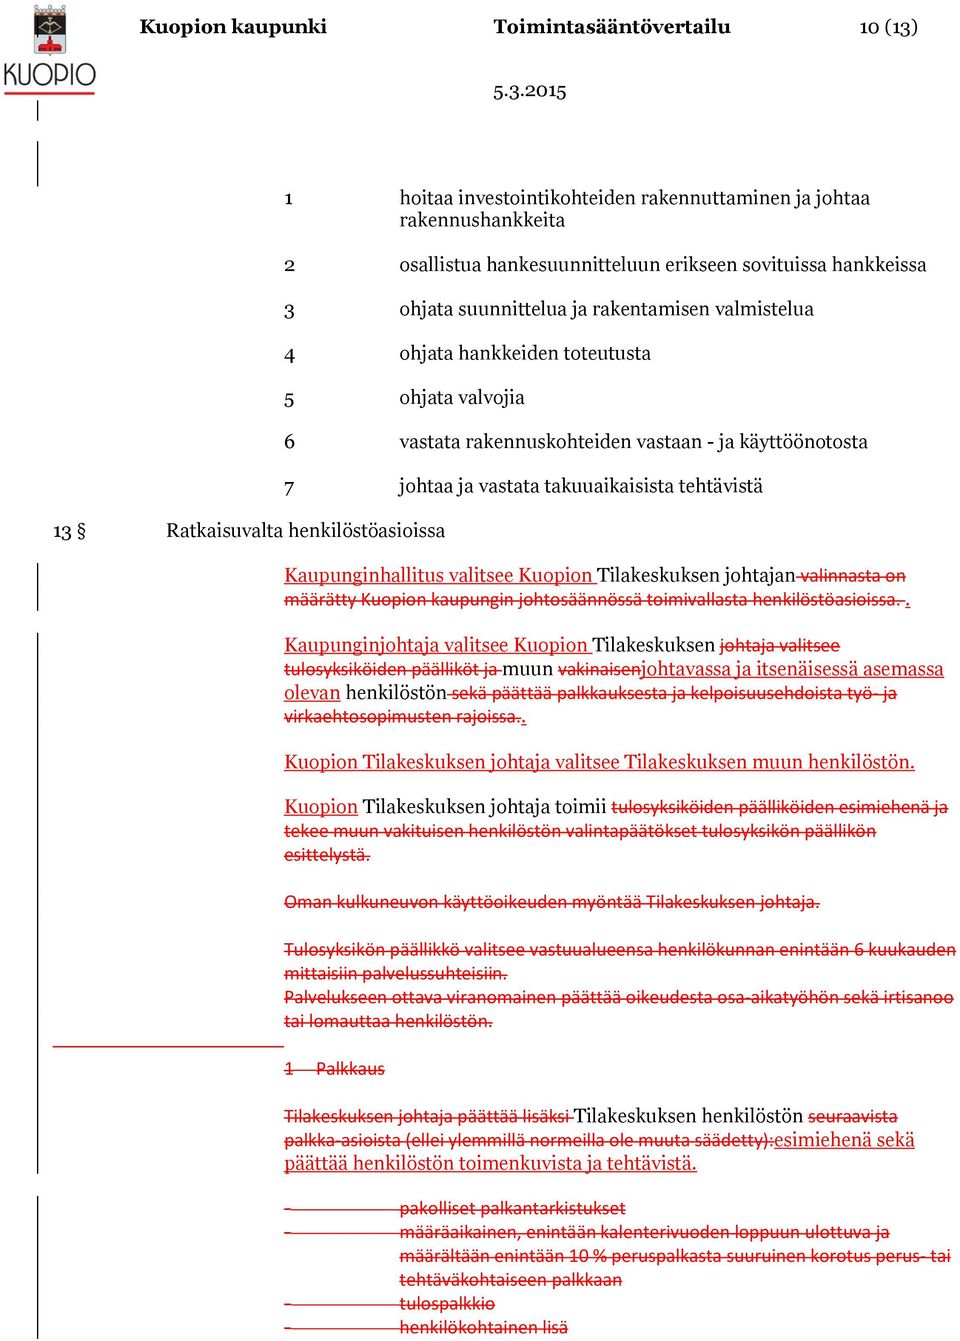 vastata takuuaikaisista tehtävistä Kaupunginhallitus valitsee Kuopion Tilakeskuksen johtajan valinnasta on määrätty Kuopion kaupungin johtosäännössä toimivallasta henkilöstöasioissa.